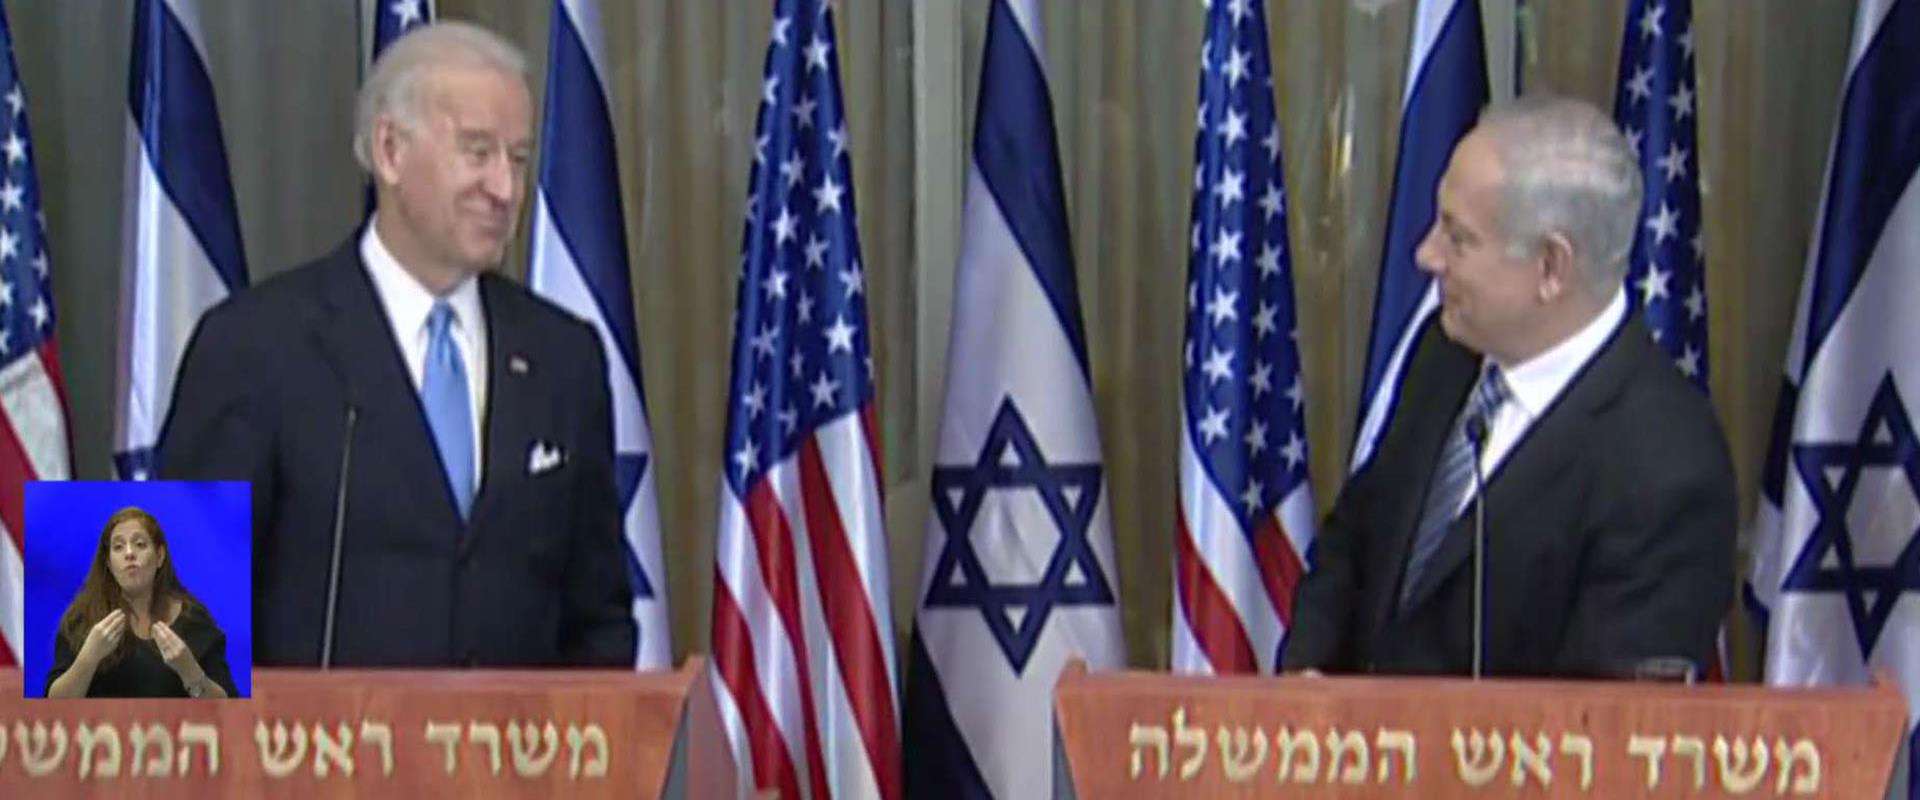 עידן חדש: איך ישראל תושפע מבחירתו של ביידן?